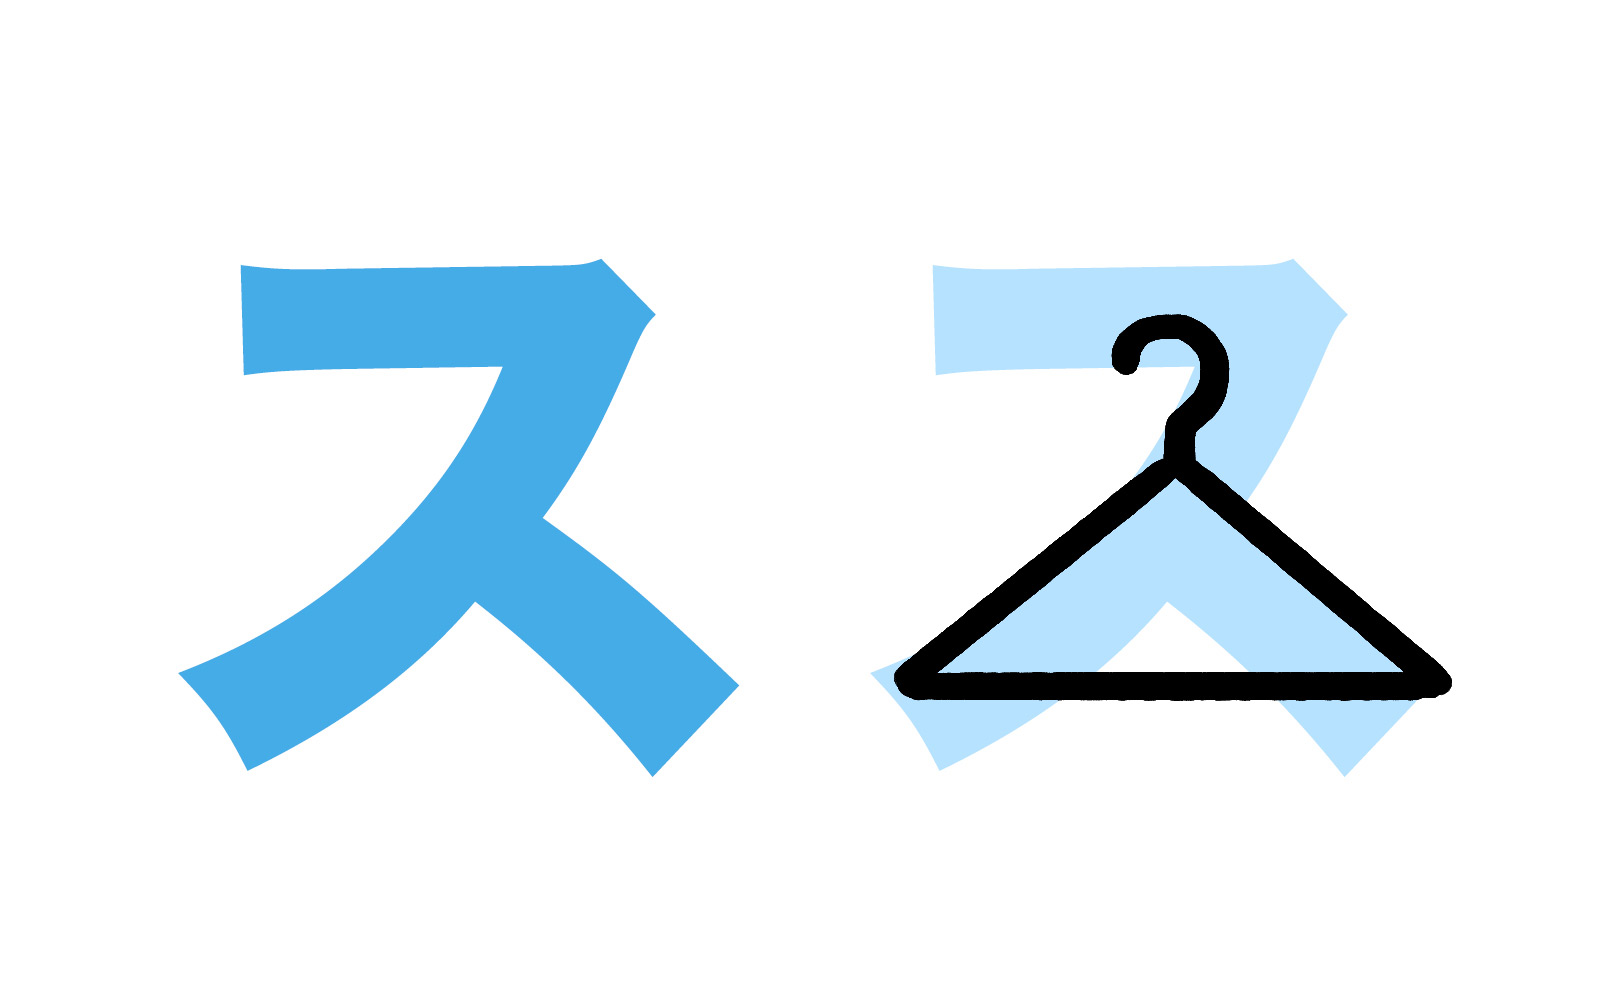 Katakana character ス mnemonic